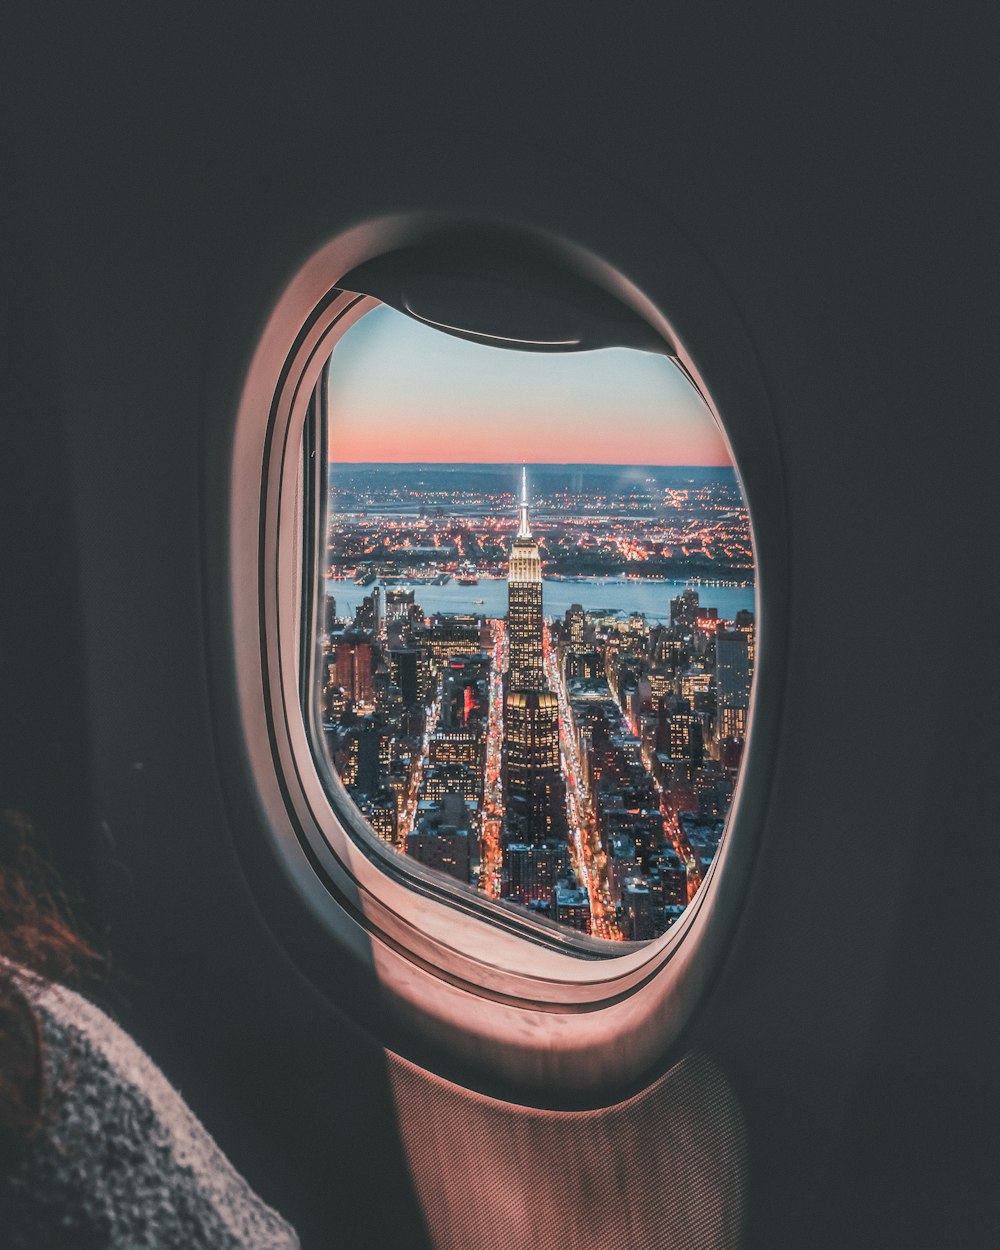 Flugzeugfensterfoto des Empire State Building